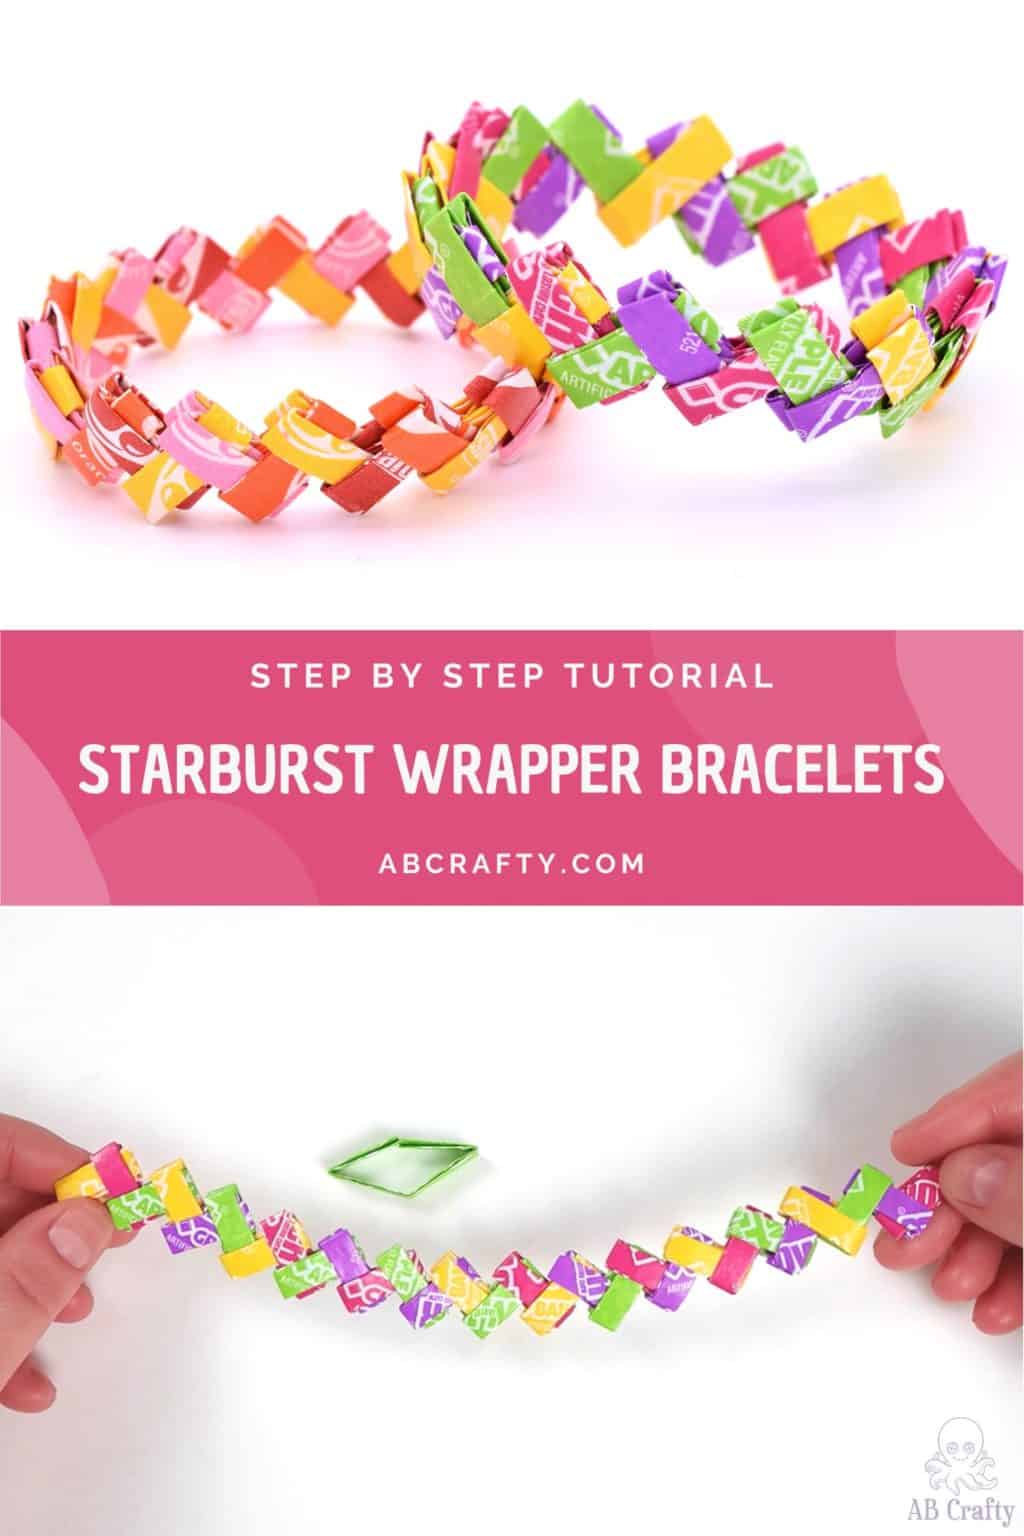 For... - BraceletBook.com - Friendship Bracelets: Get Inspired | Facebook